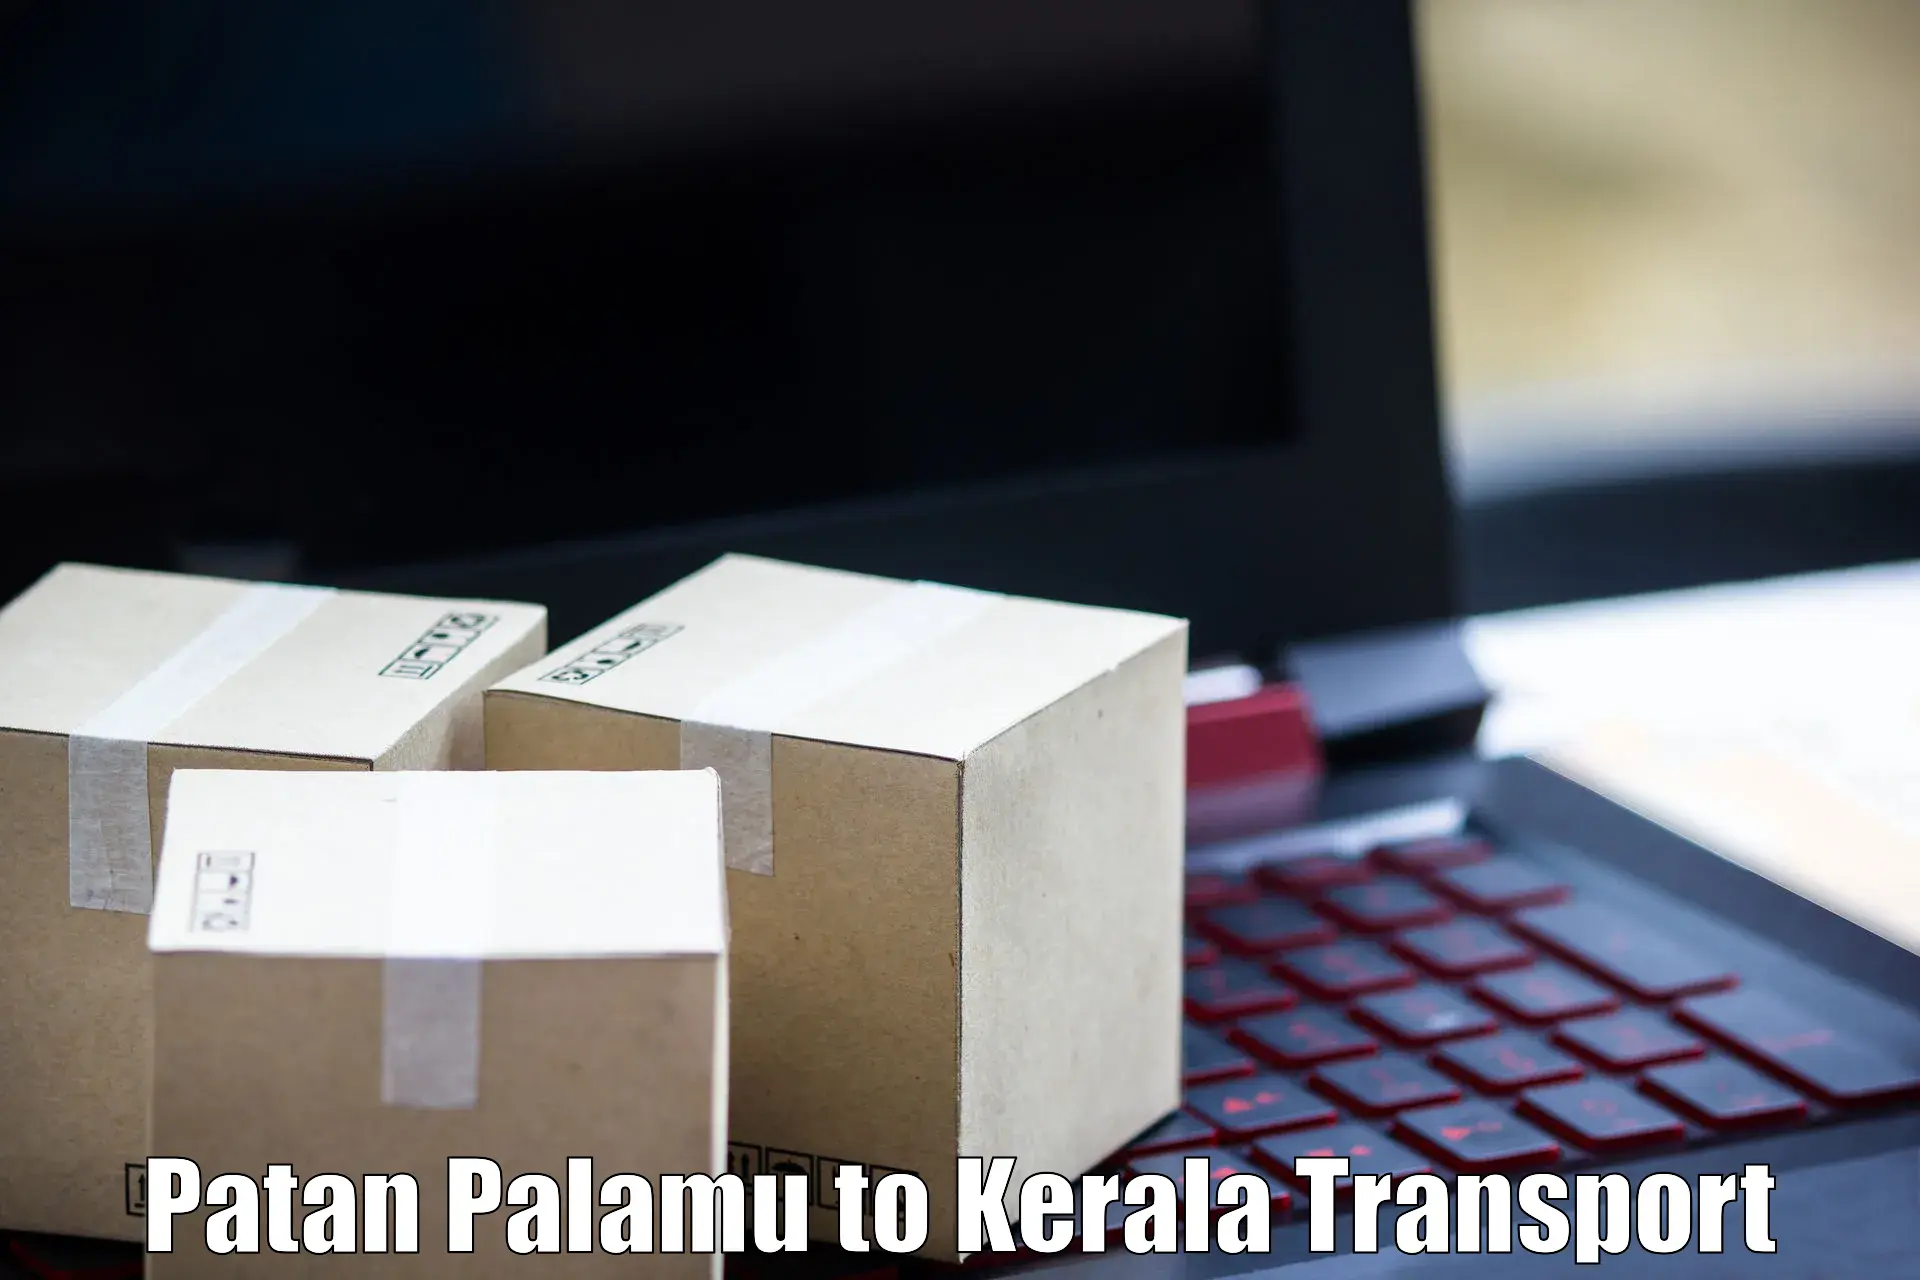 Intercity transport Patan Palamu to Thalassery